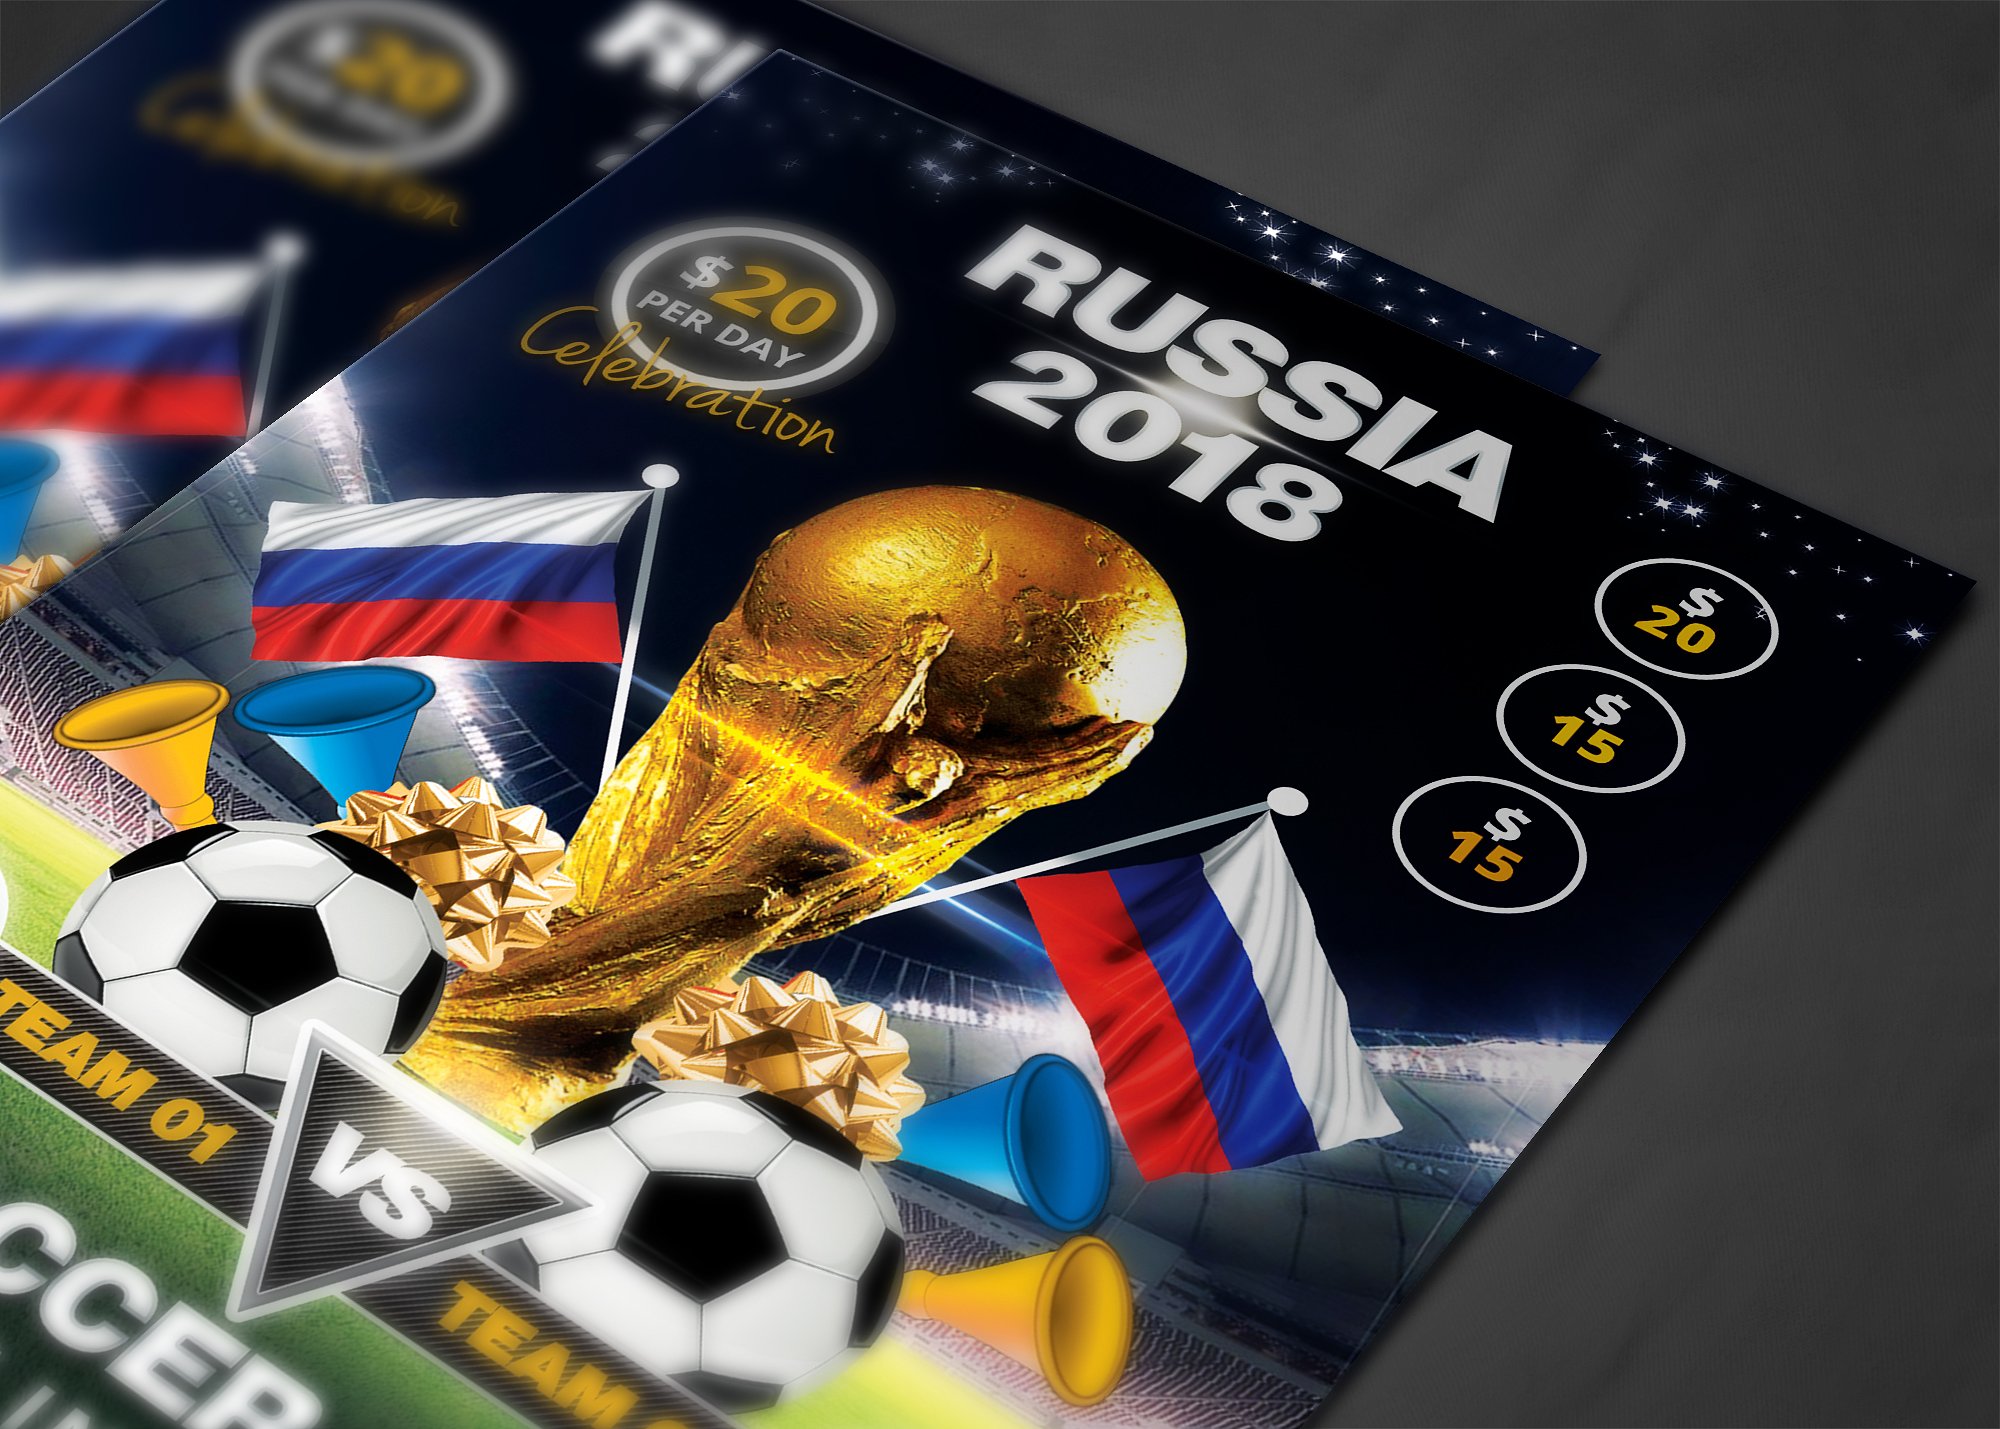 足球杯比赛宣传海报设计单页模板 Soccer Cup Flyer Template插图(3)